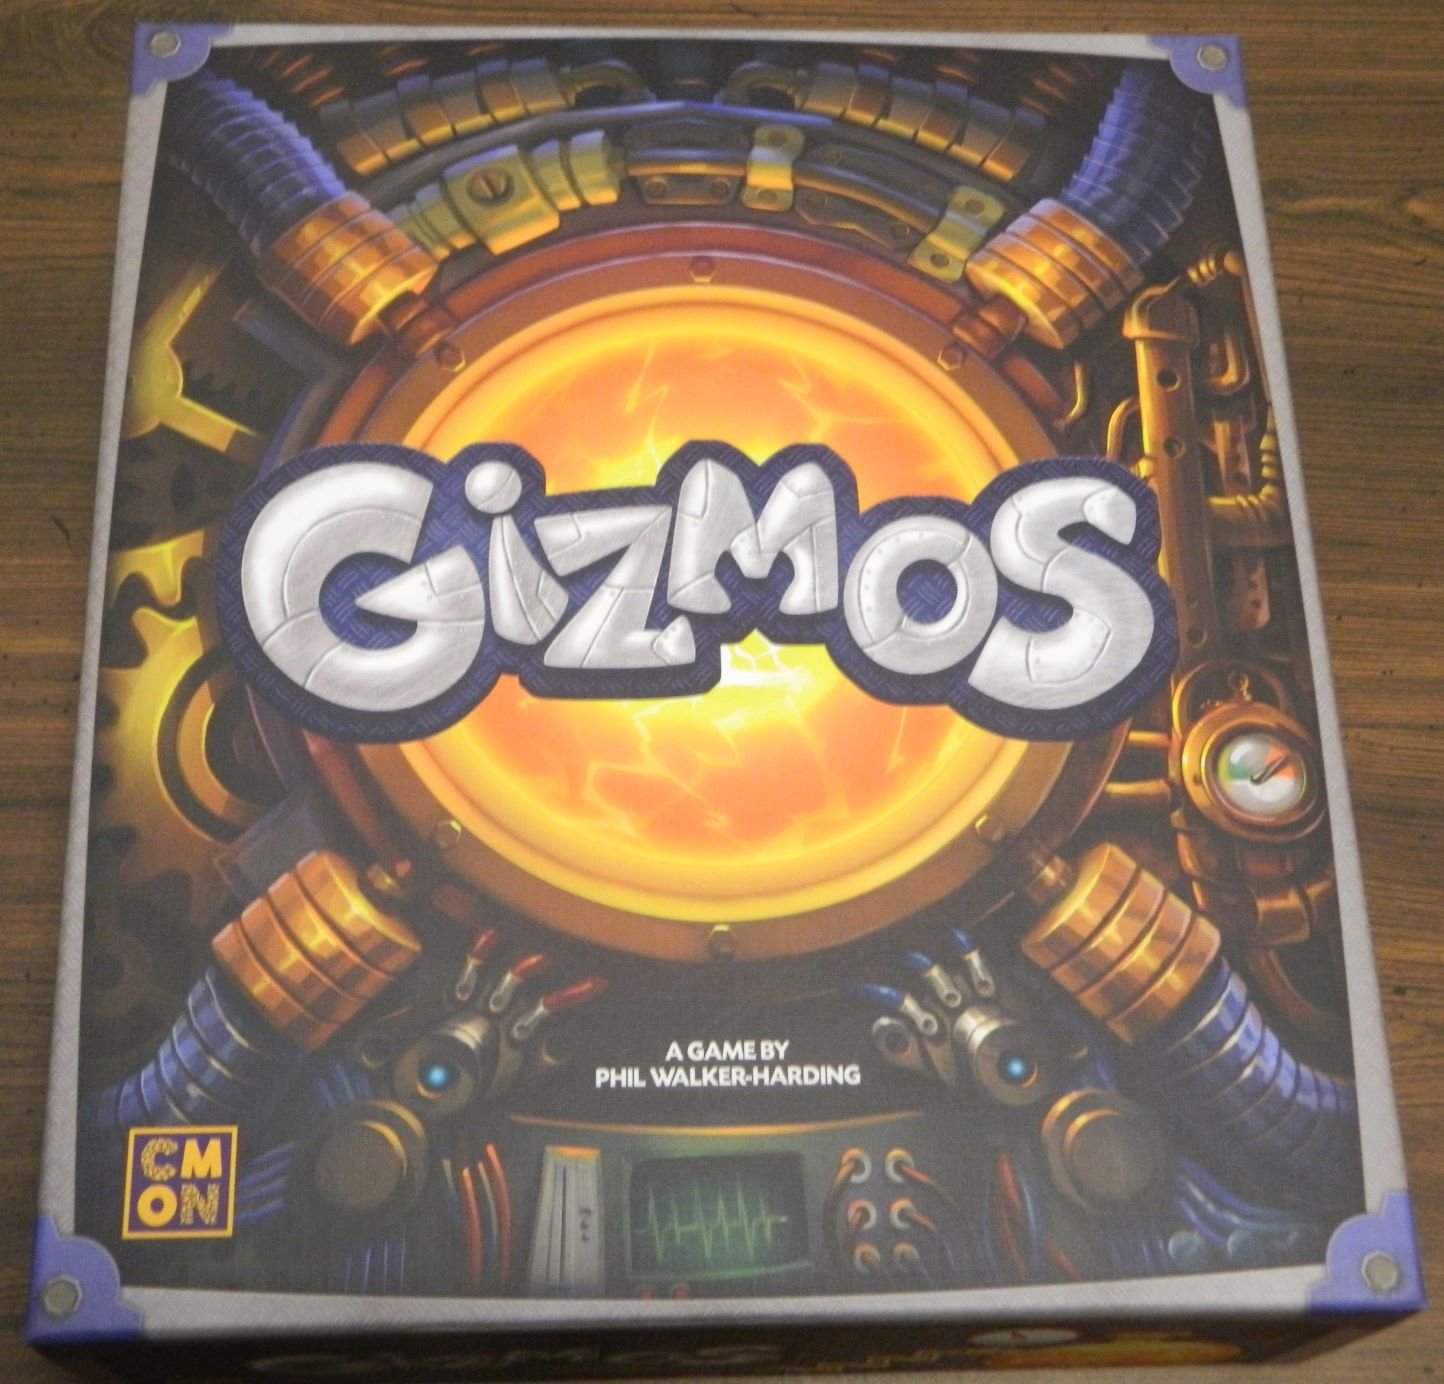 Box for Gizmos